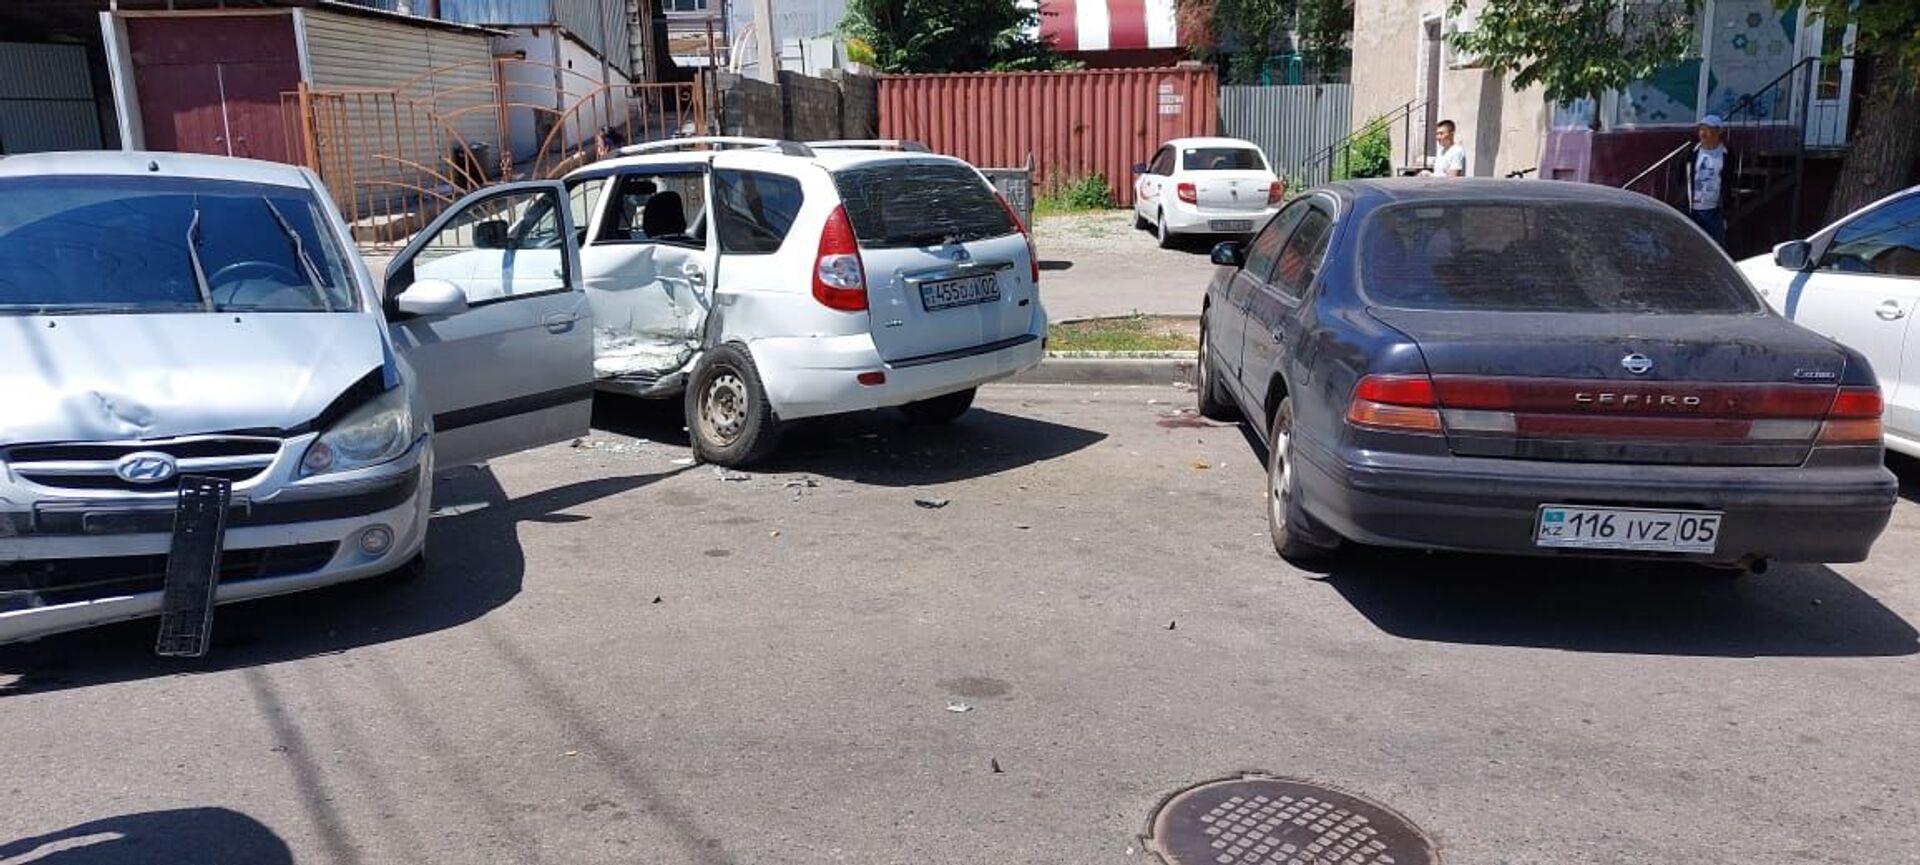 Лопнуло колесо: пассажир и два пешехода пострадали в ДТП в Алматы - Sputnik Казахстан, 1920, 23.06.2021